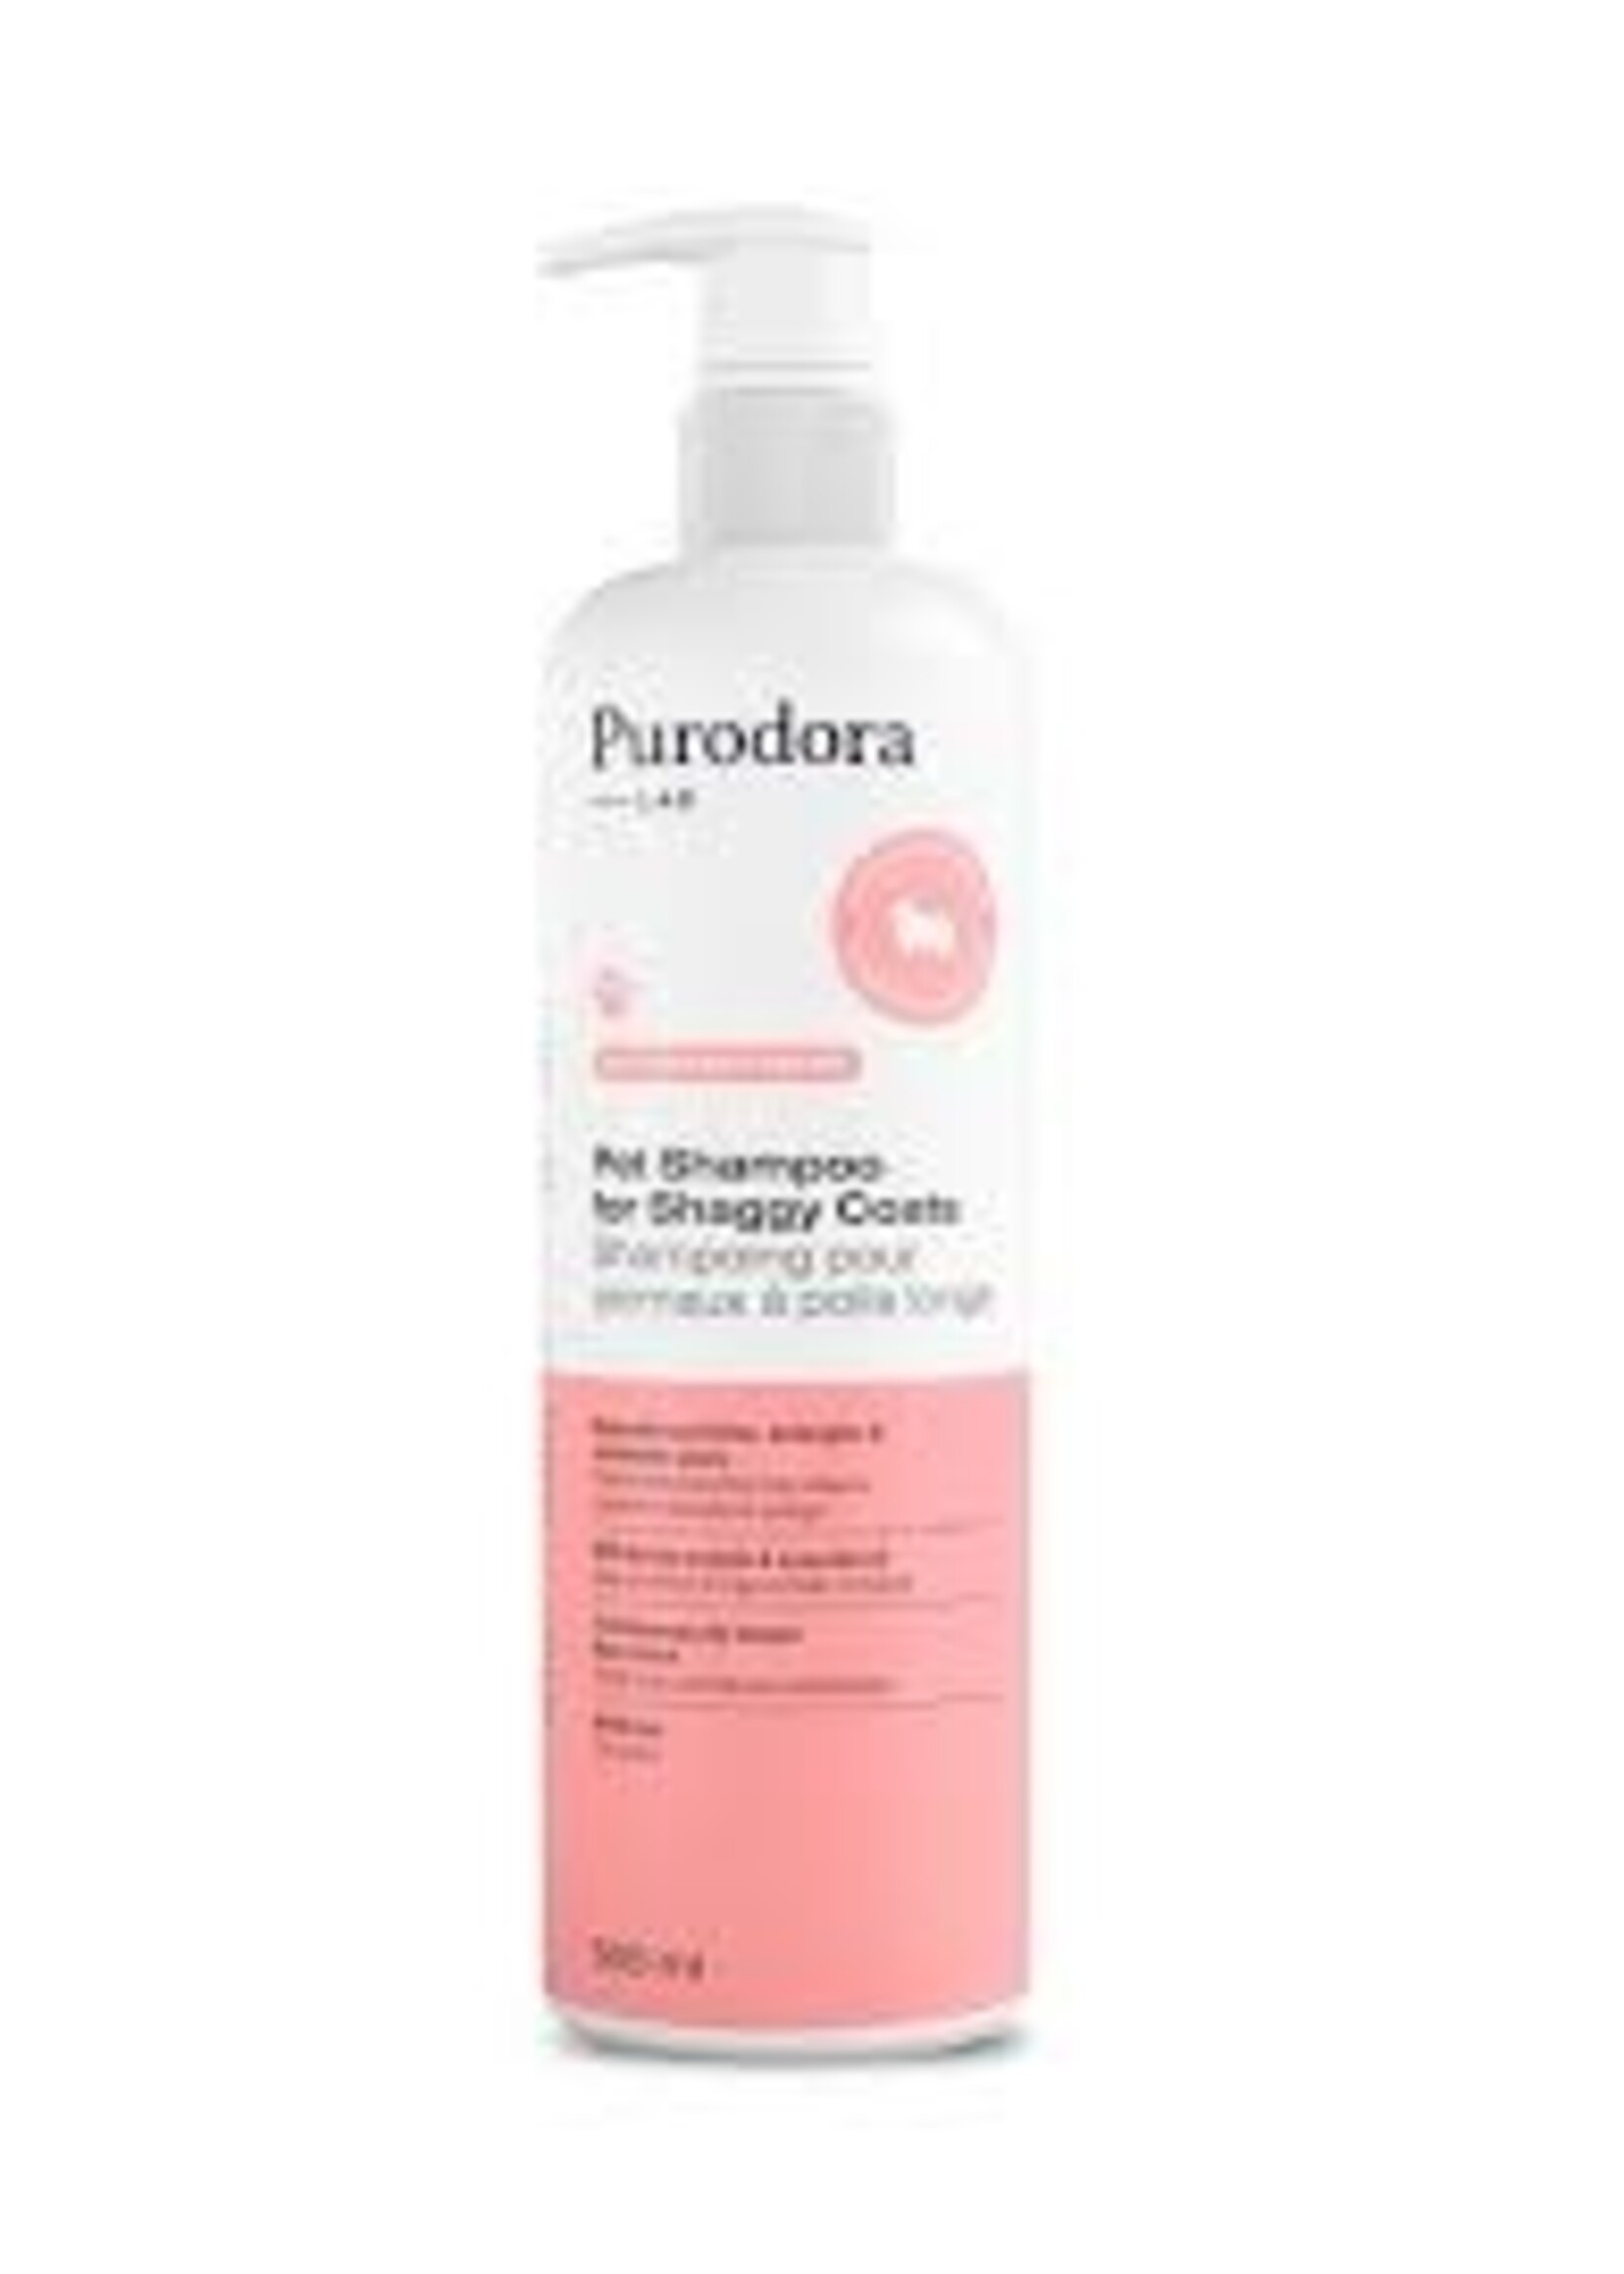 Purodora Purodora Pet Shampoo for Shaggy Coats